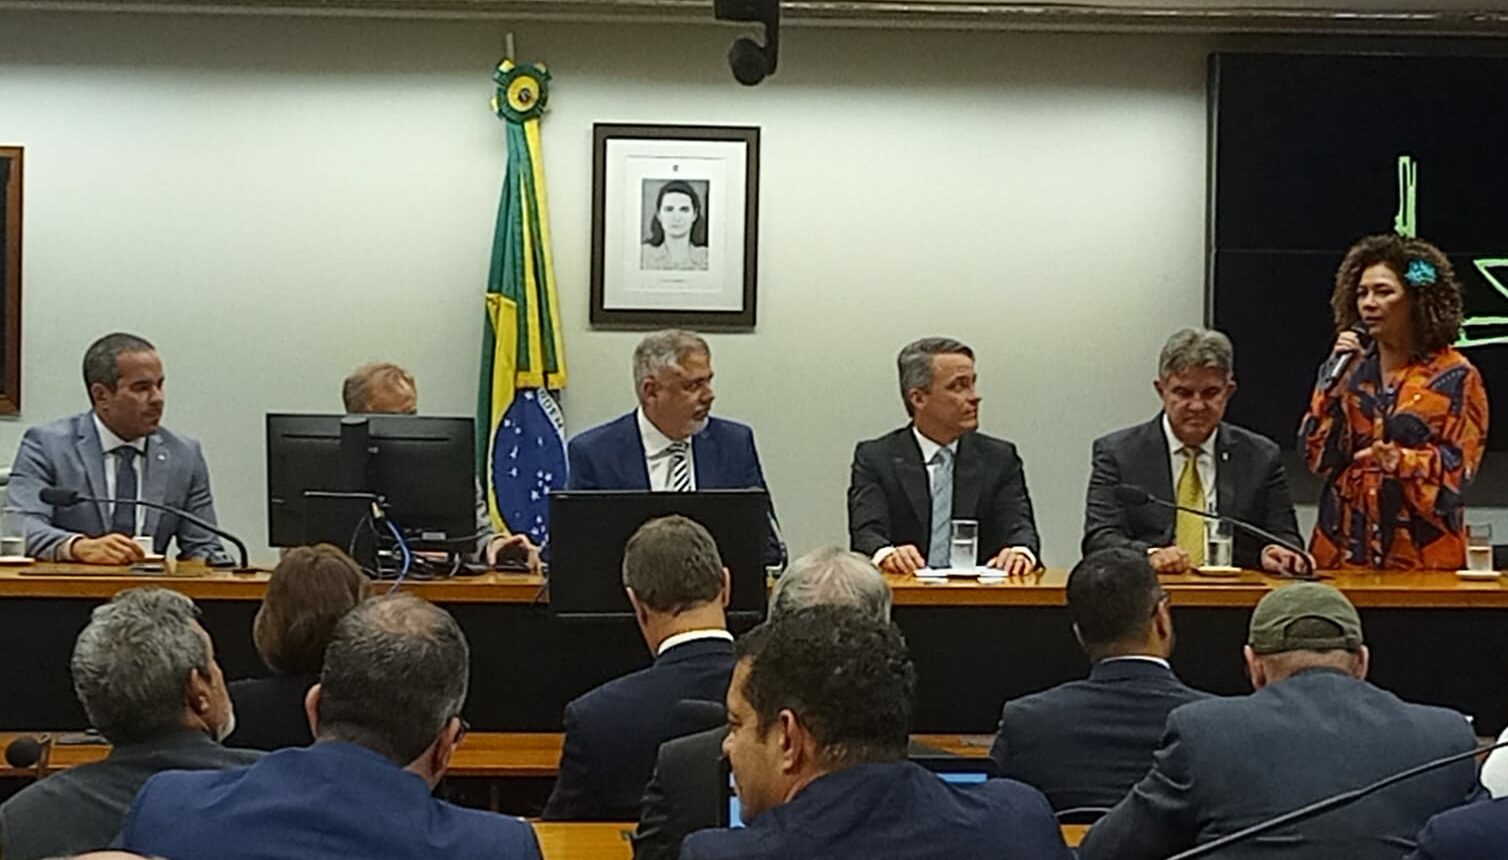 A Diretora da Agência Brasileira de Desenvolvimento Industrial (ABDI), Perpétua Almeida, fala durante a cerimônia de posse da nova diretoria da Assespro, em Brasília